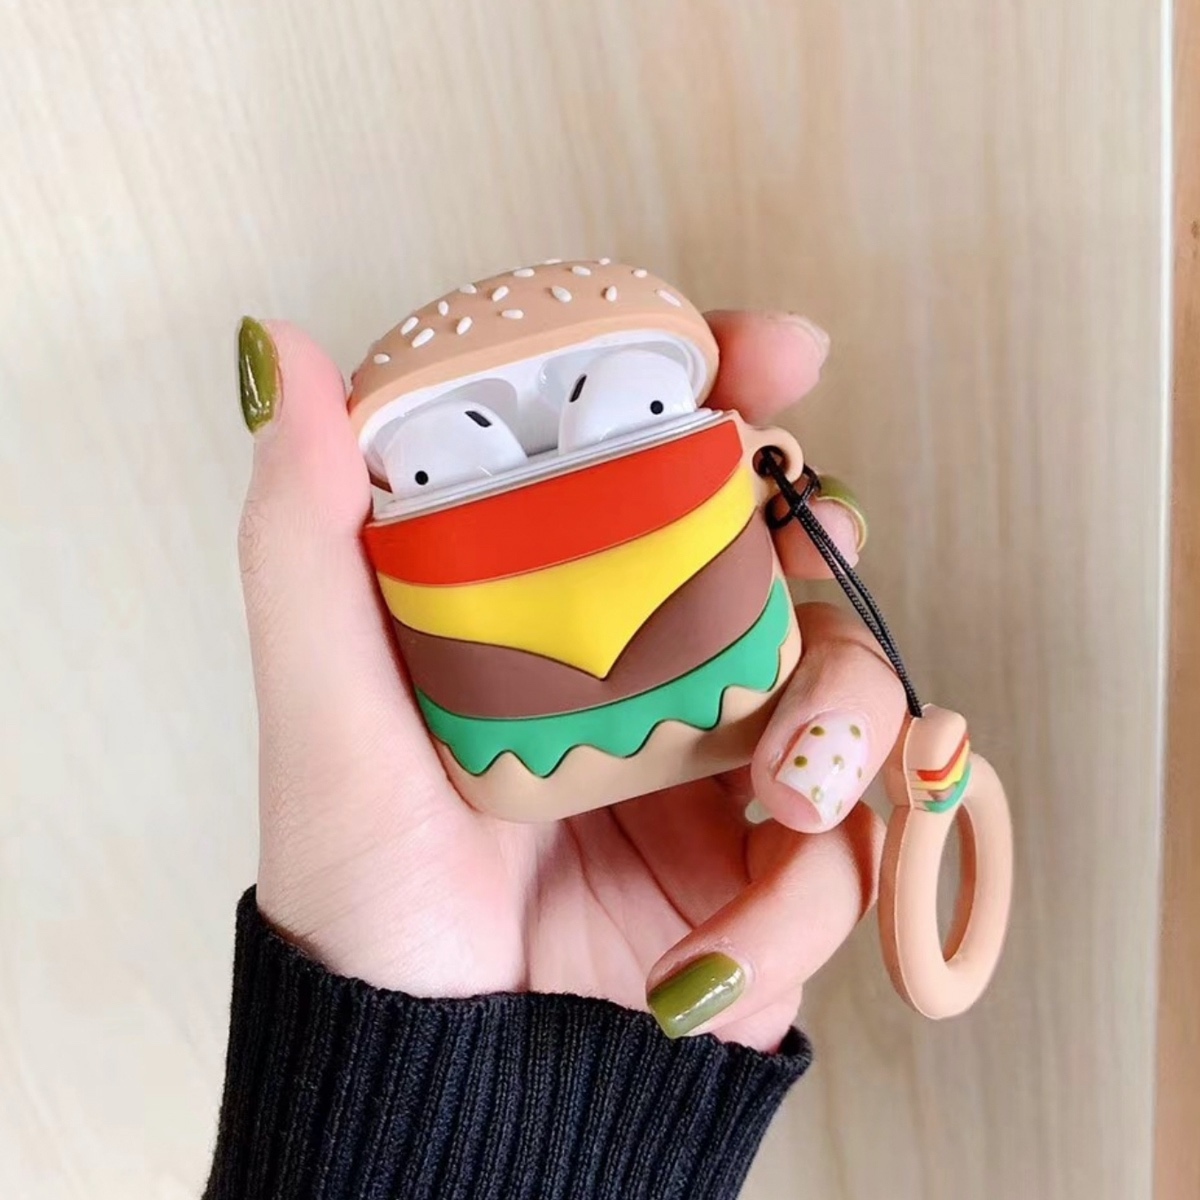 Airpods ケース 韓国 ハンバーガー カバー シリコン ストラップ セット かわいい 面白い 可愛い お洒落 イヤホンケース セレクトショップオンリーユー